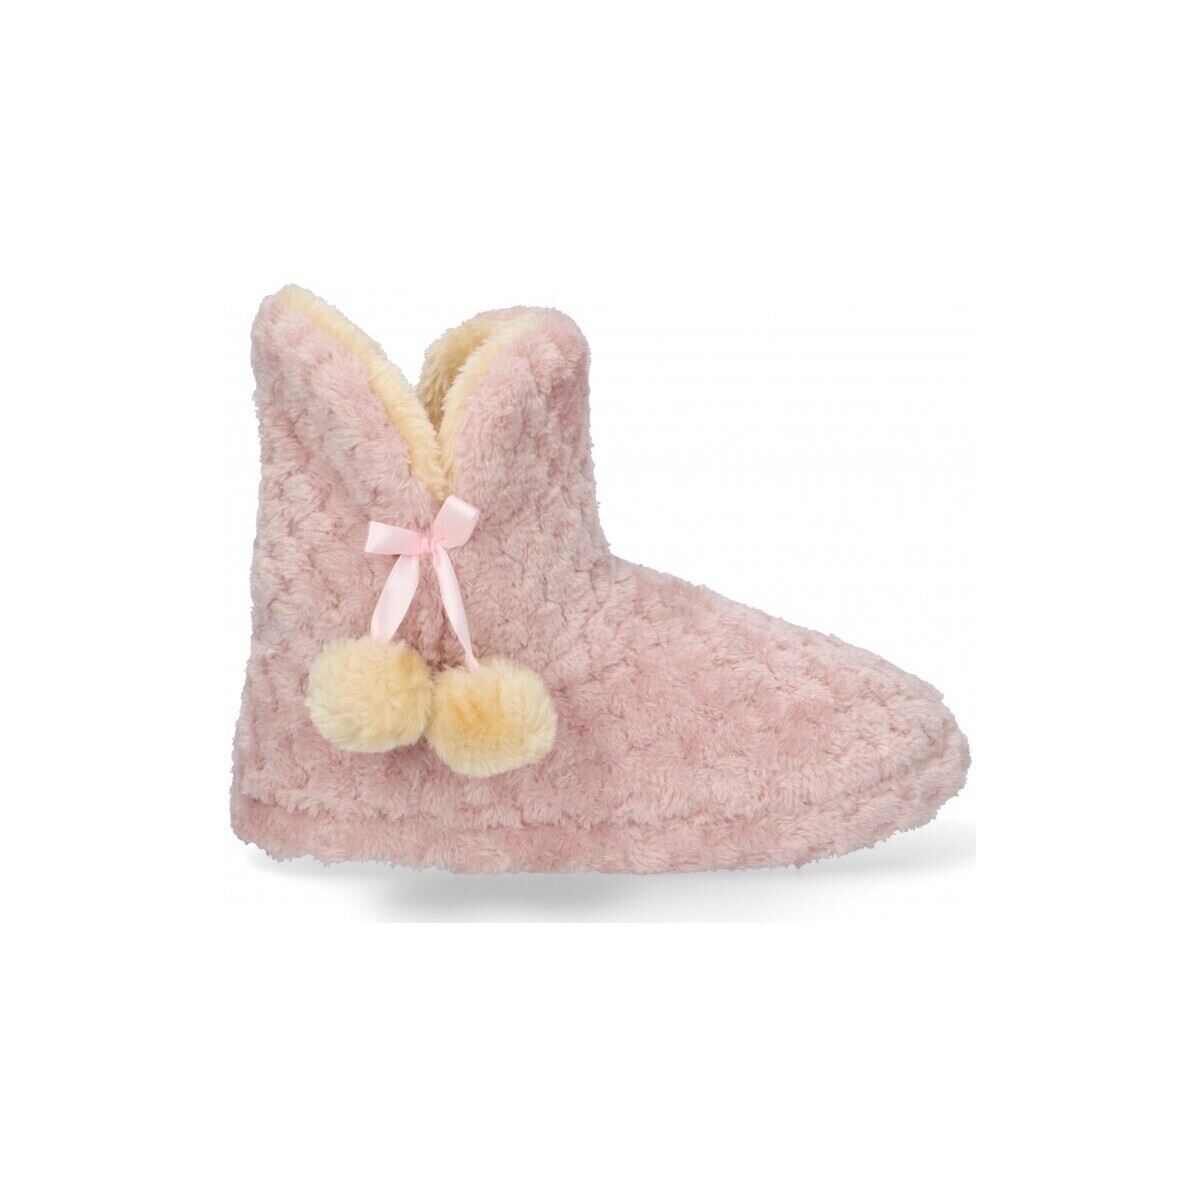 Παπούτσια Γυναίκα Παντόφλες Luna Collection 58581 Ροζ